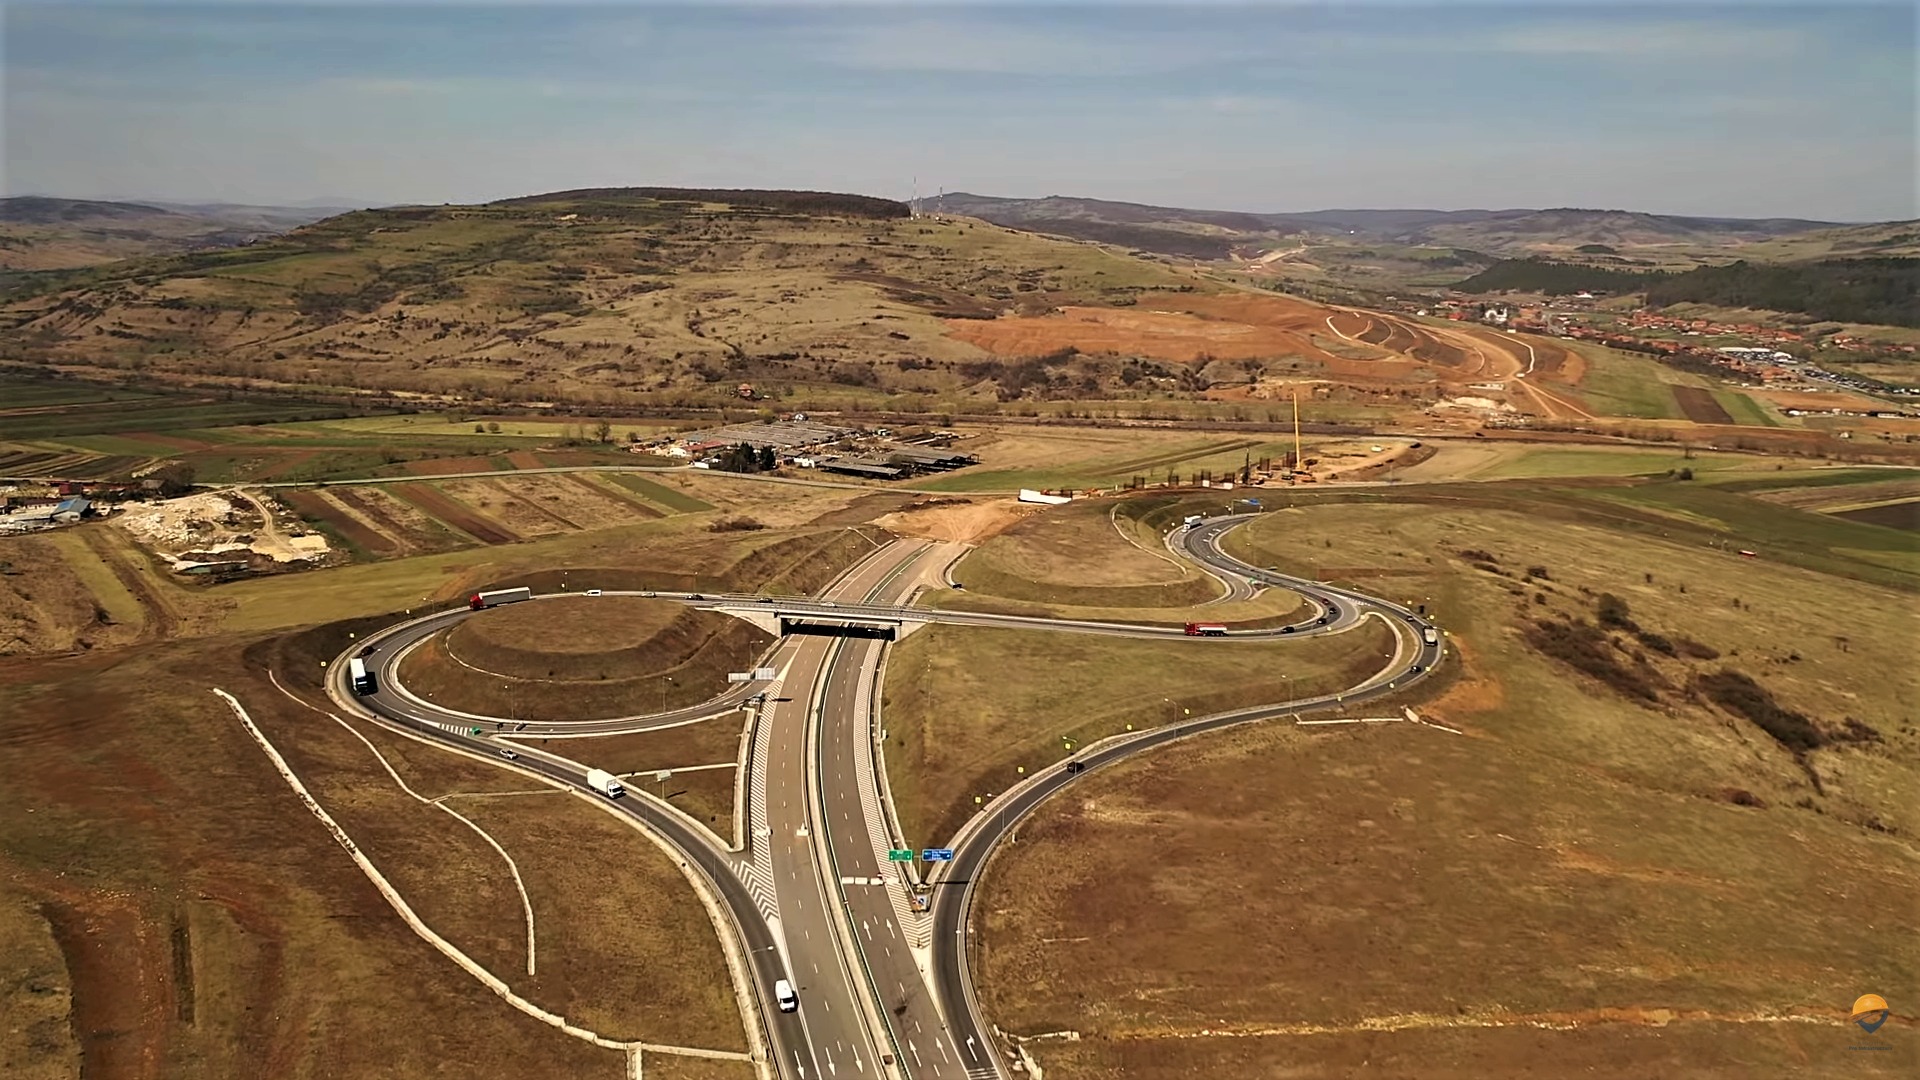 Stadiul LA ZI al lucrărilor de pe Autostrada Transilvania. FOTO: Lotul Nădășelu-Zimbor, foto aprilie 2022, Asociația Pro Infrastructură